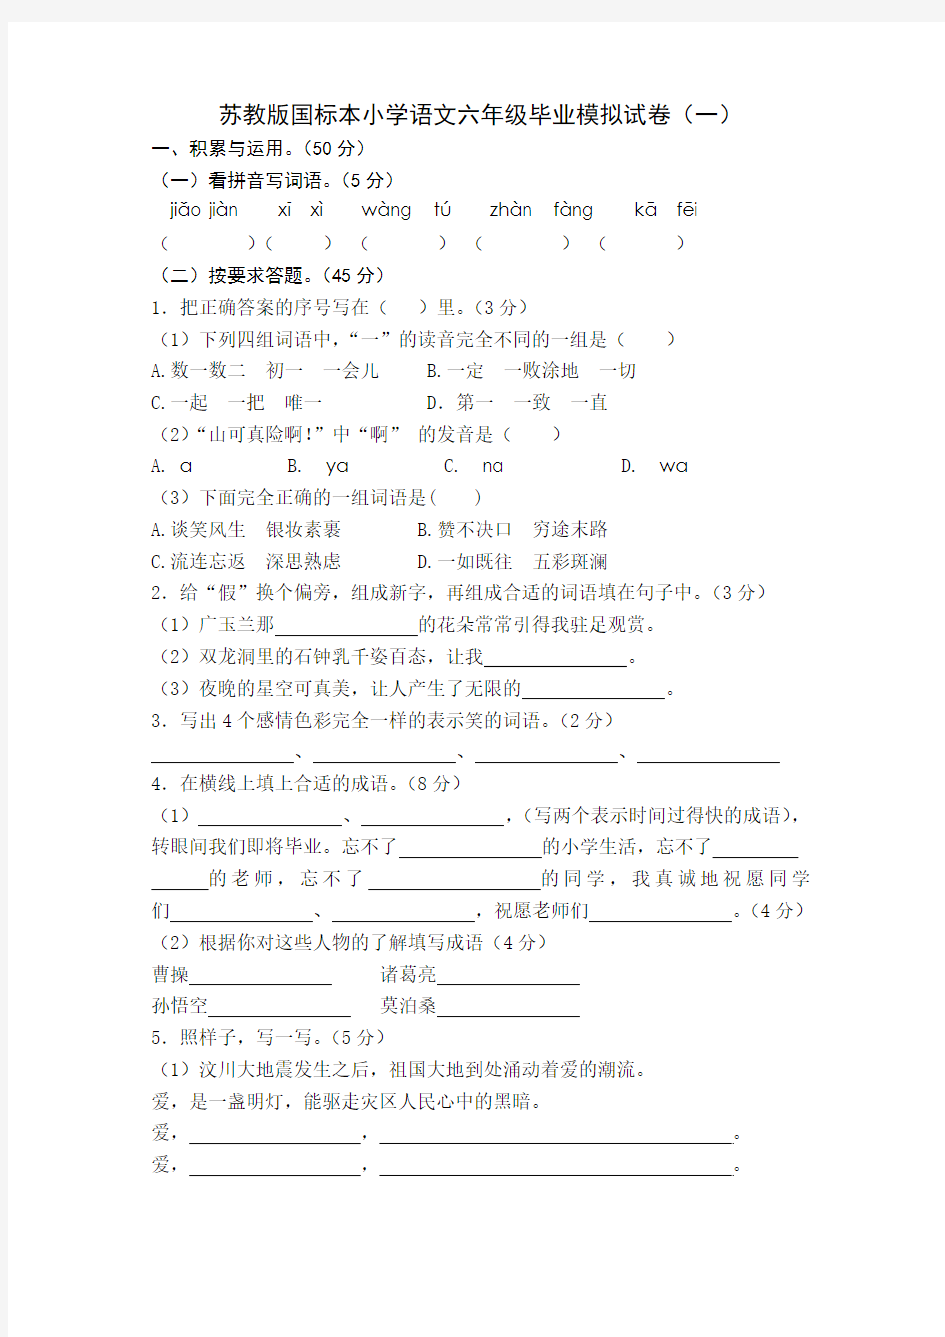 苏教版国标本小学语文六年级毕业模拟试卷(一)